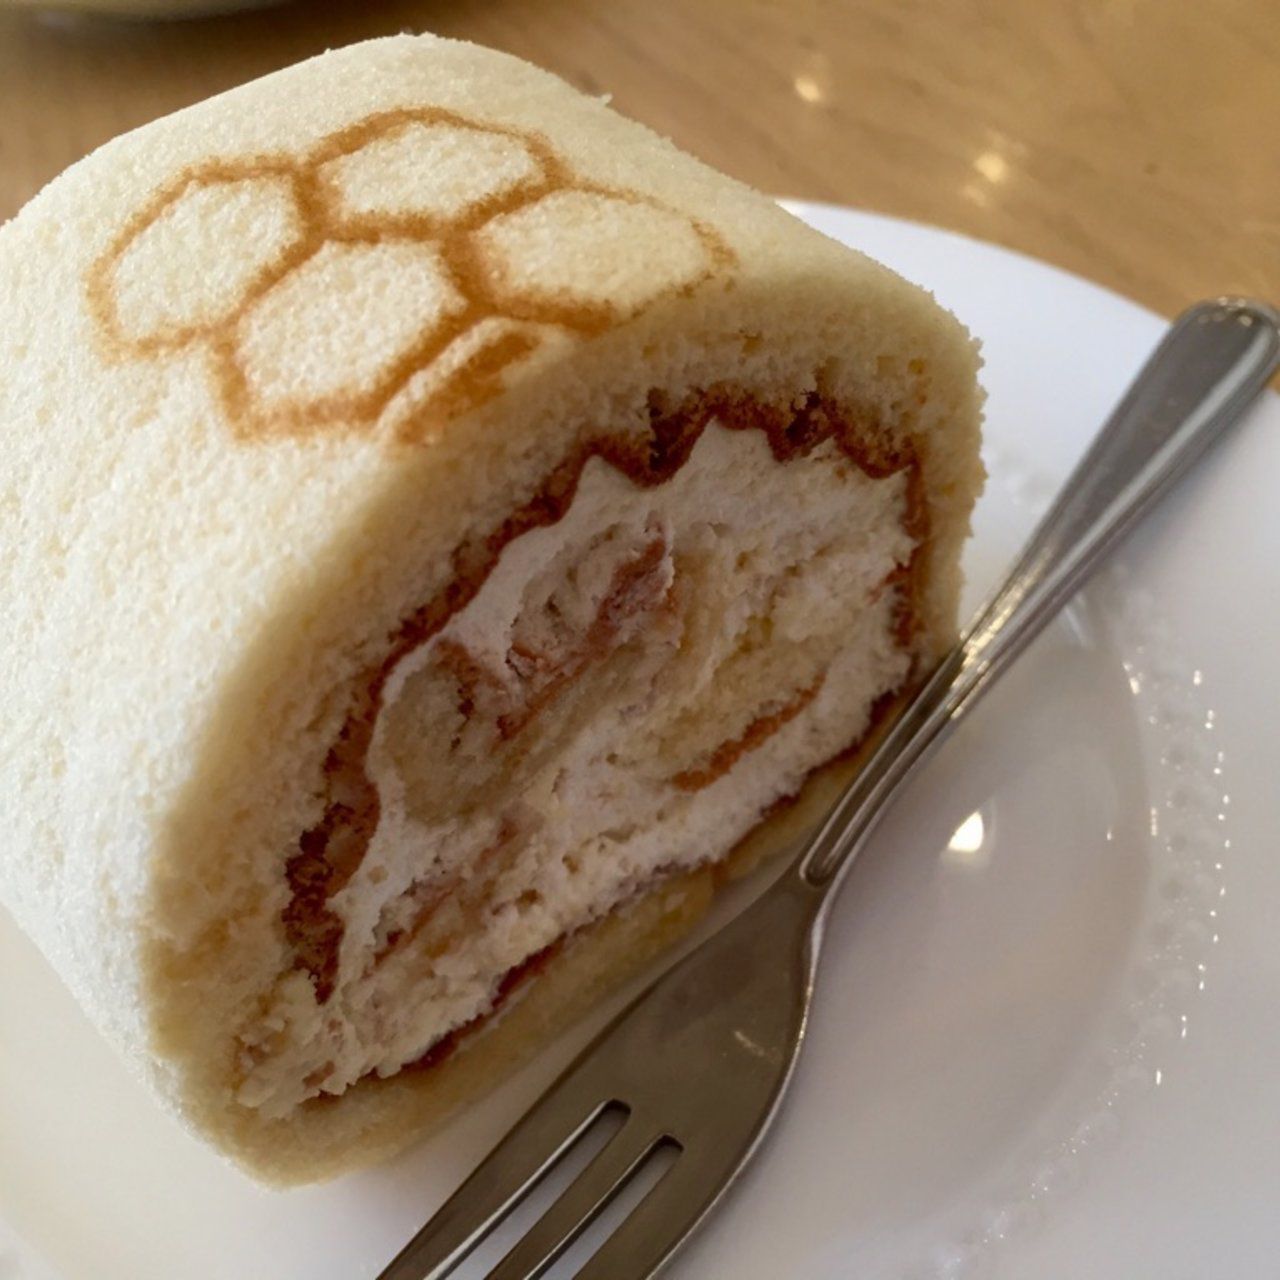 ぎっしり詰まったクリームは幸せの証 東京都内で買える絶品ロールケーキ8選 Retrip リトリップ